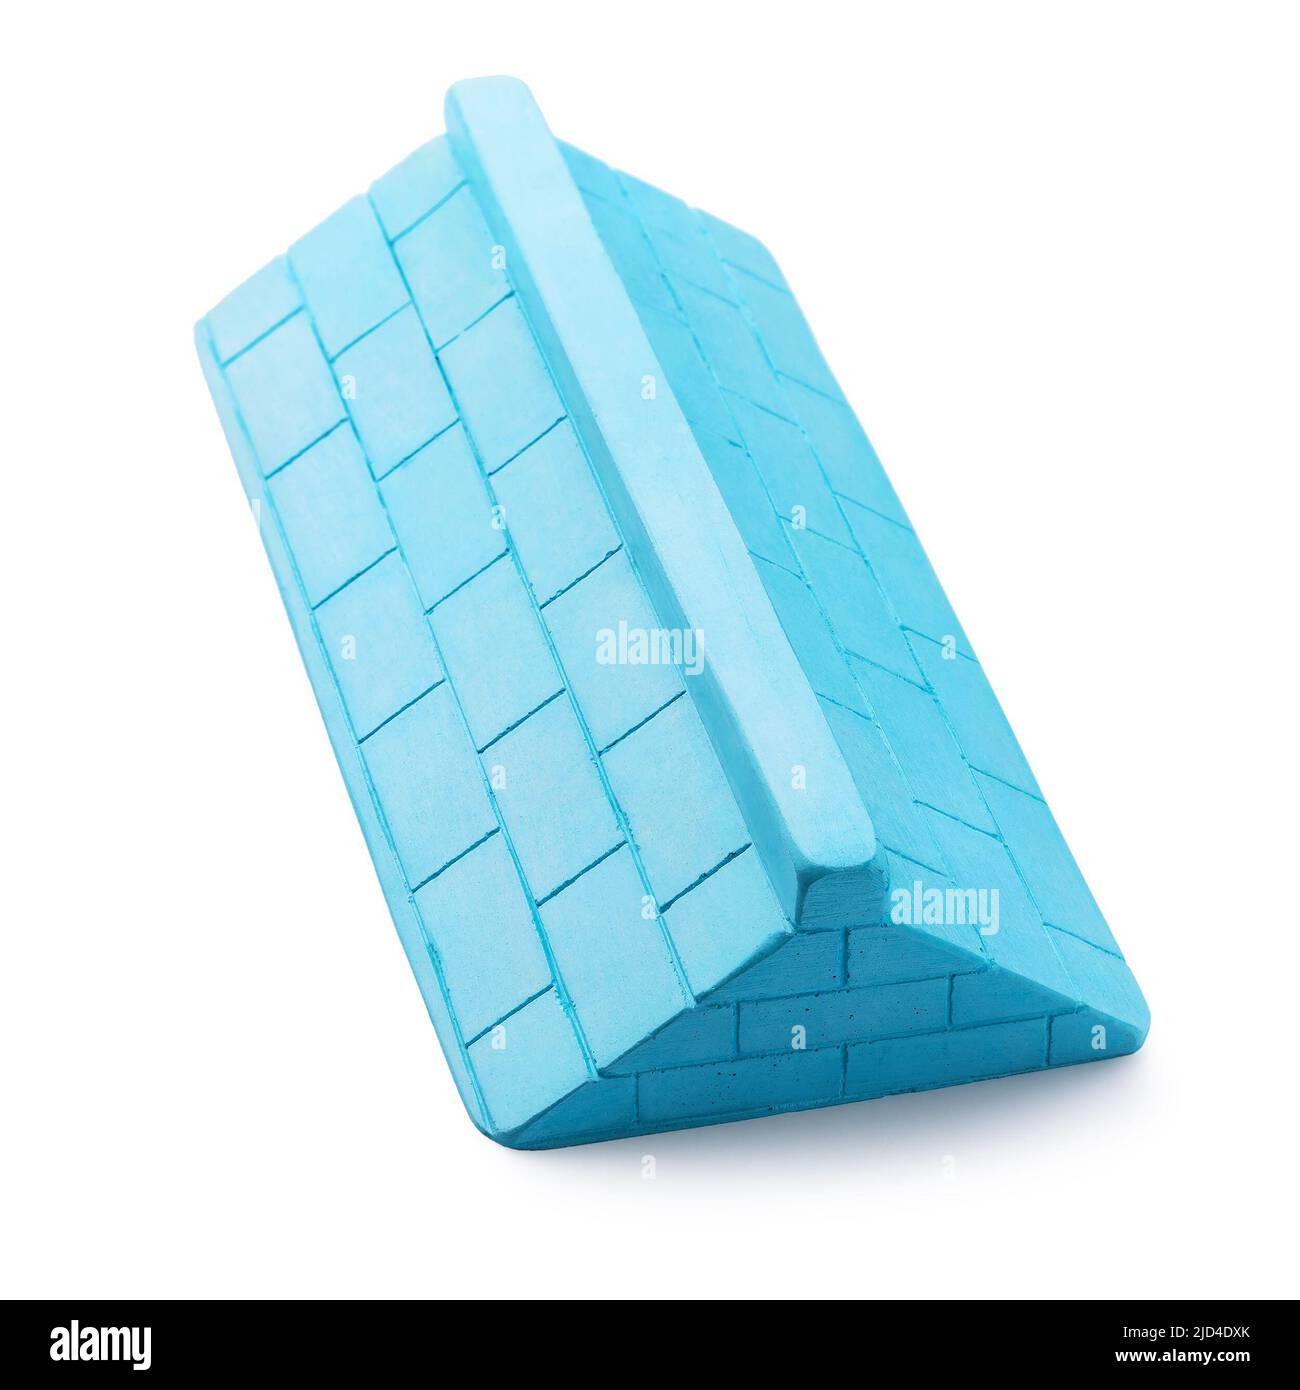 Rampa de yeso azul con tres lados para fingerboarding, aislada sobre un fondo blanco Foto de stock